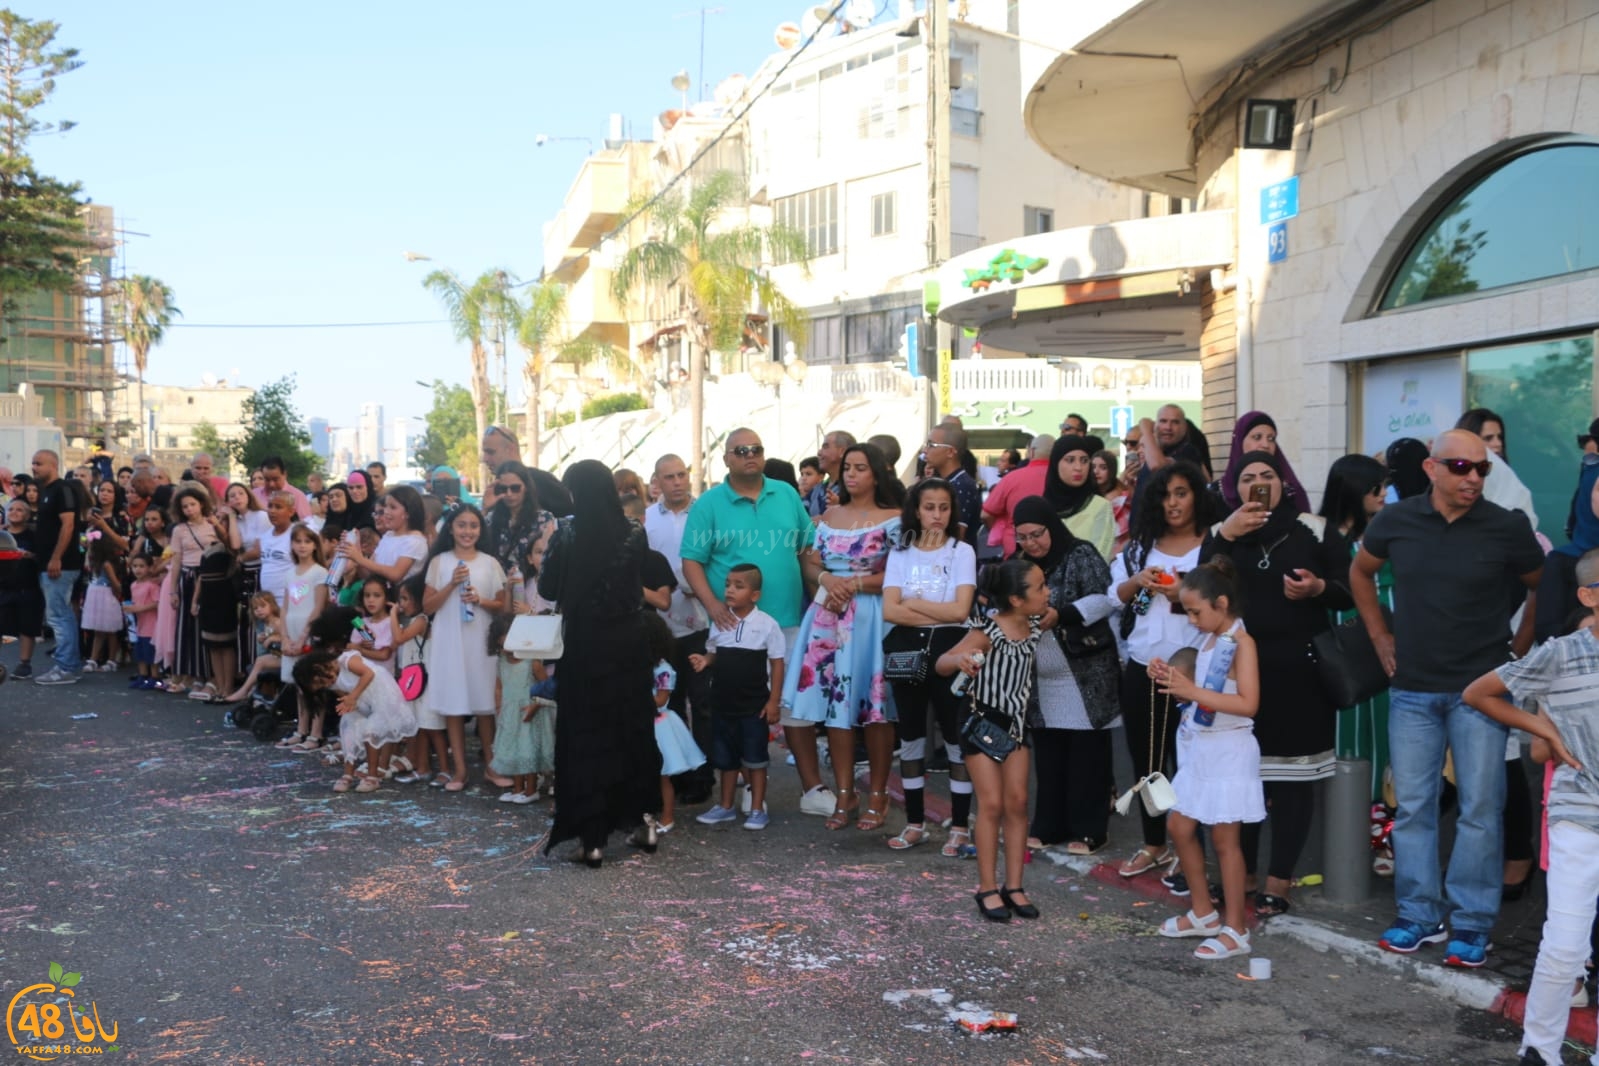  بالصور: سرية كشاف النادي الاسلامي بيافا تُنظم استعراضاً كشفياً بمناسبة عيد الفطر السعيد